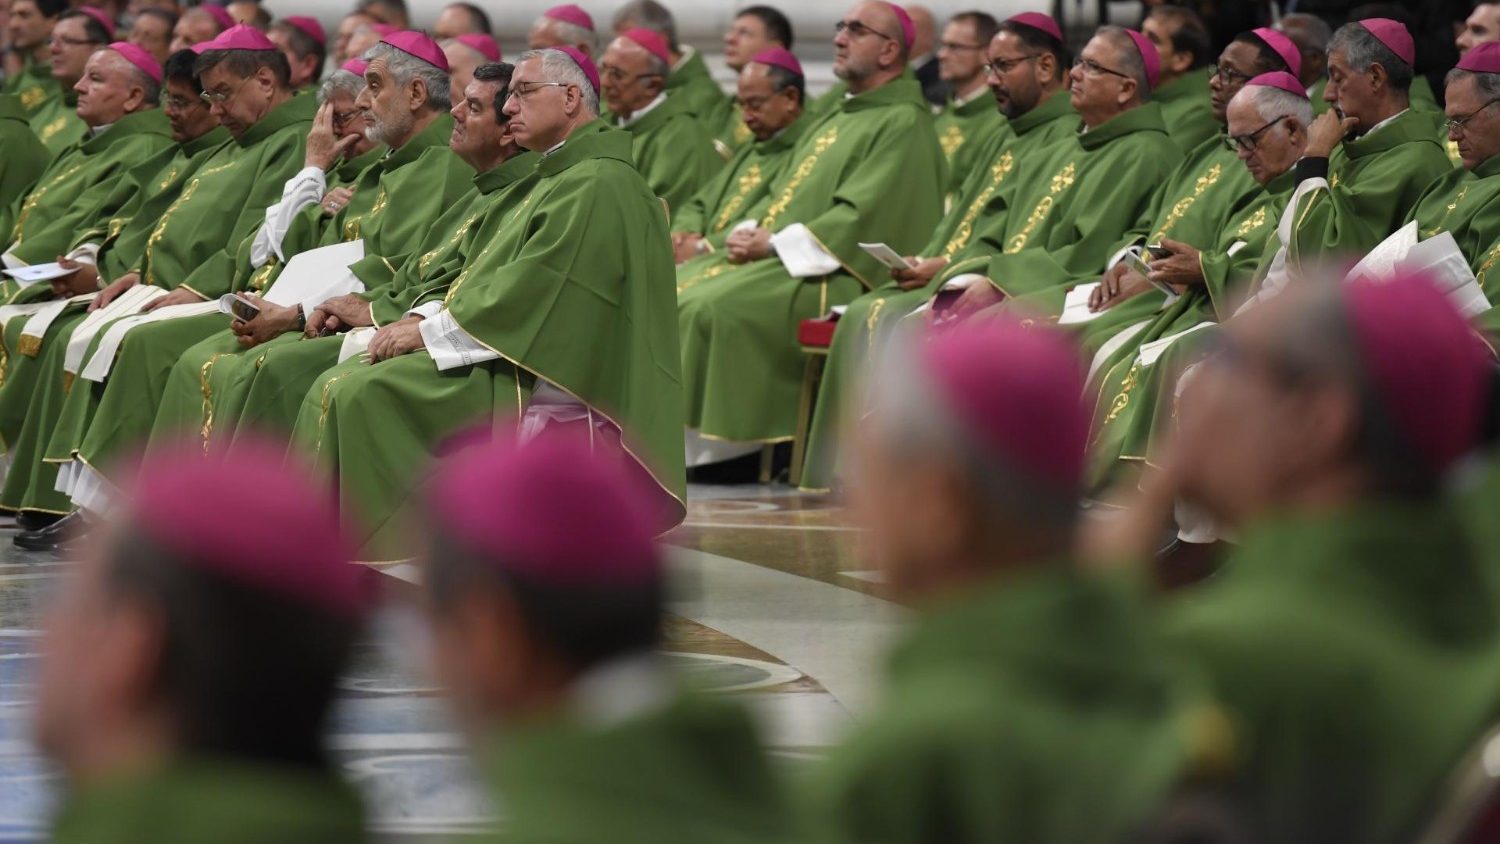 Le Pape transfère aux évêques des compétences réservées au Saint-Siège Cq5dam.thumbnail.cropped.1500.844